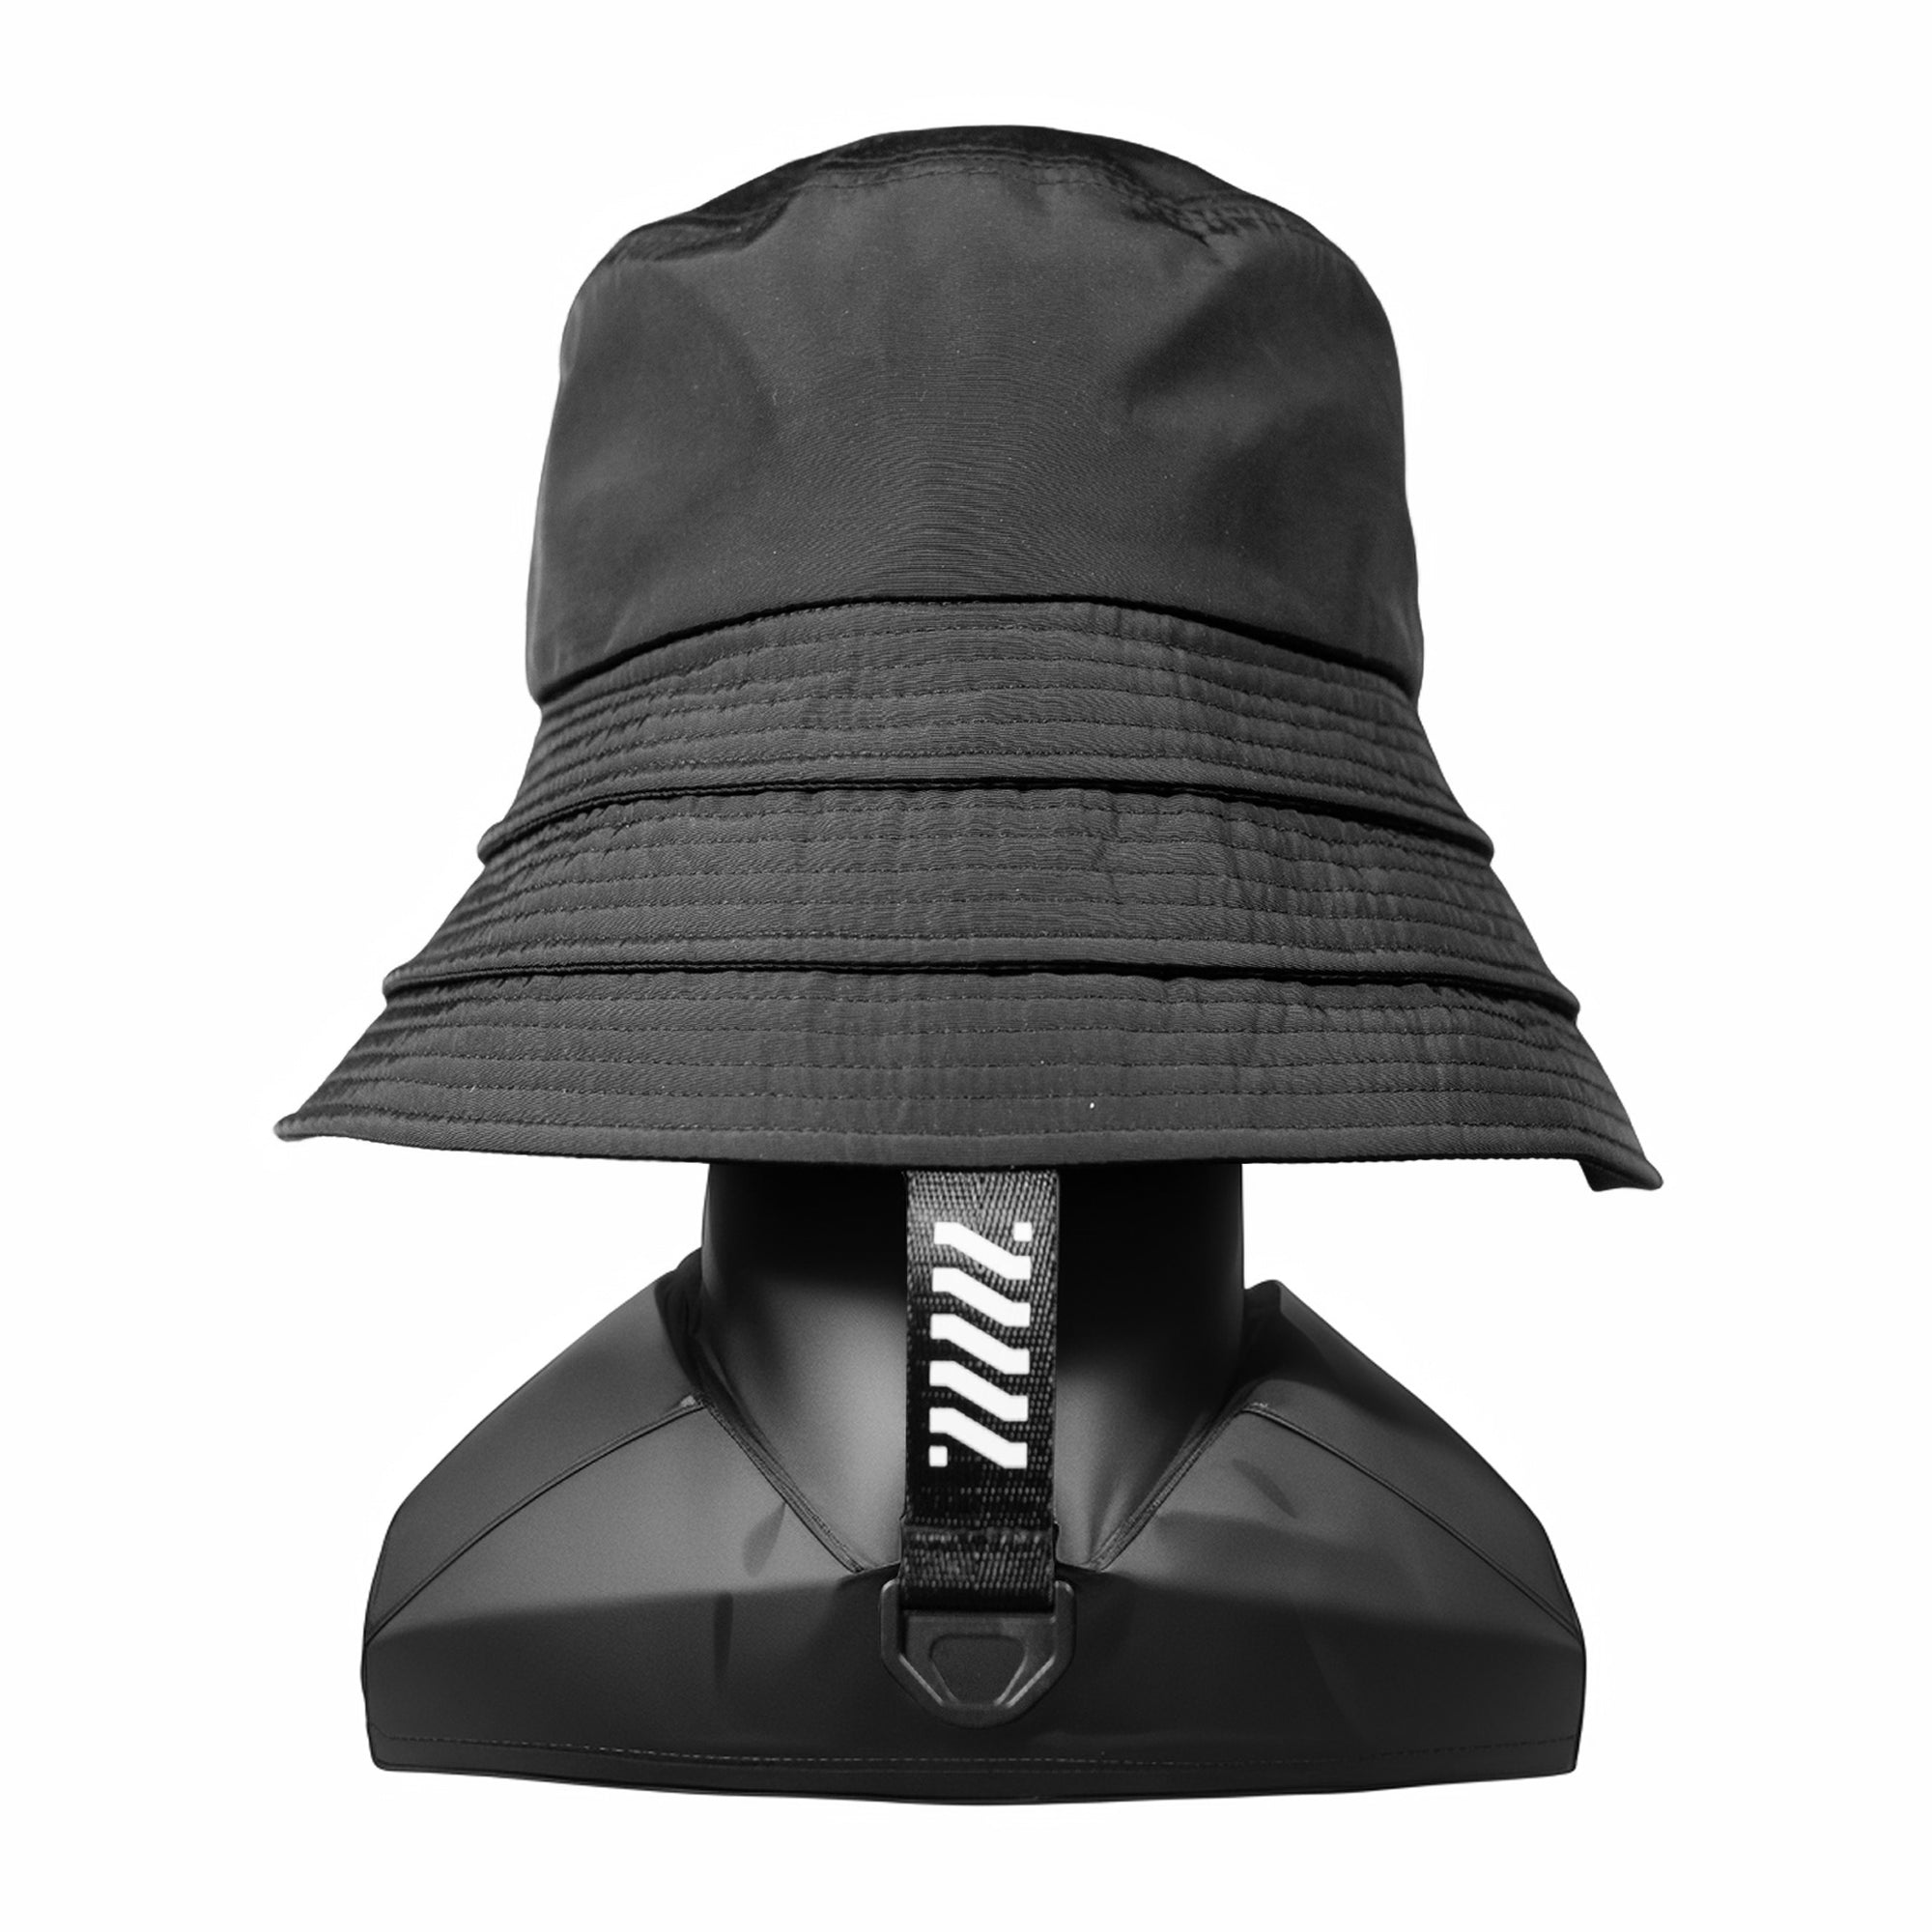 Samurai Shogun Bucket Hat